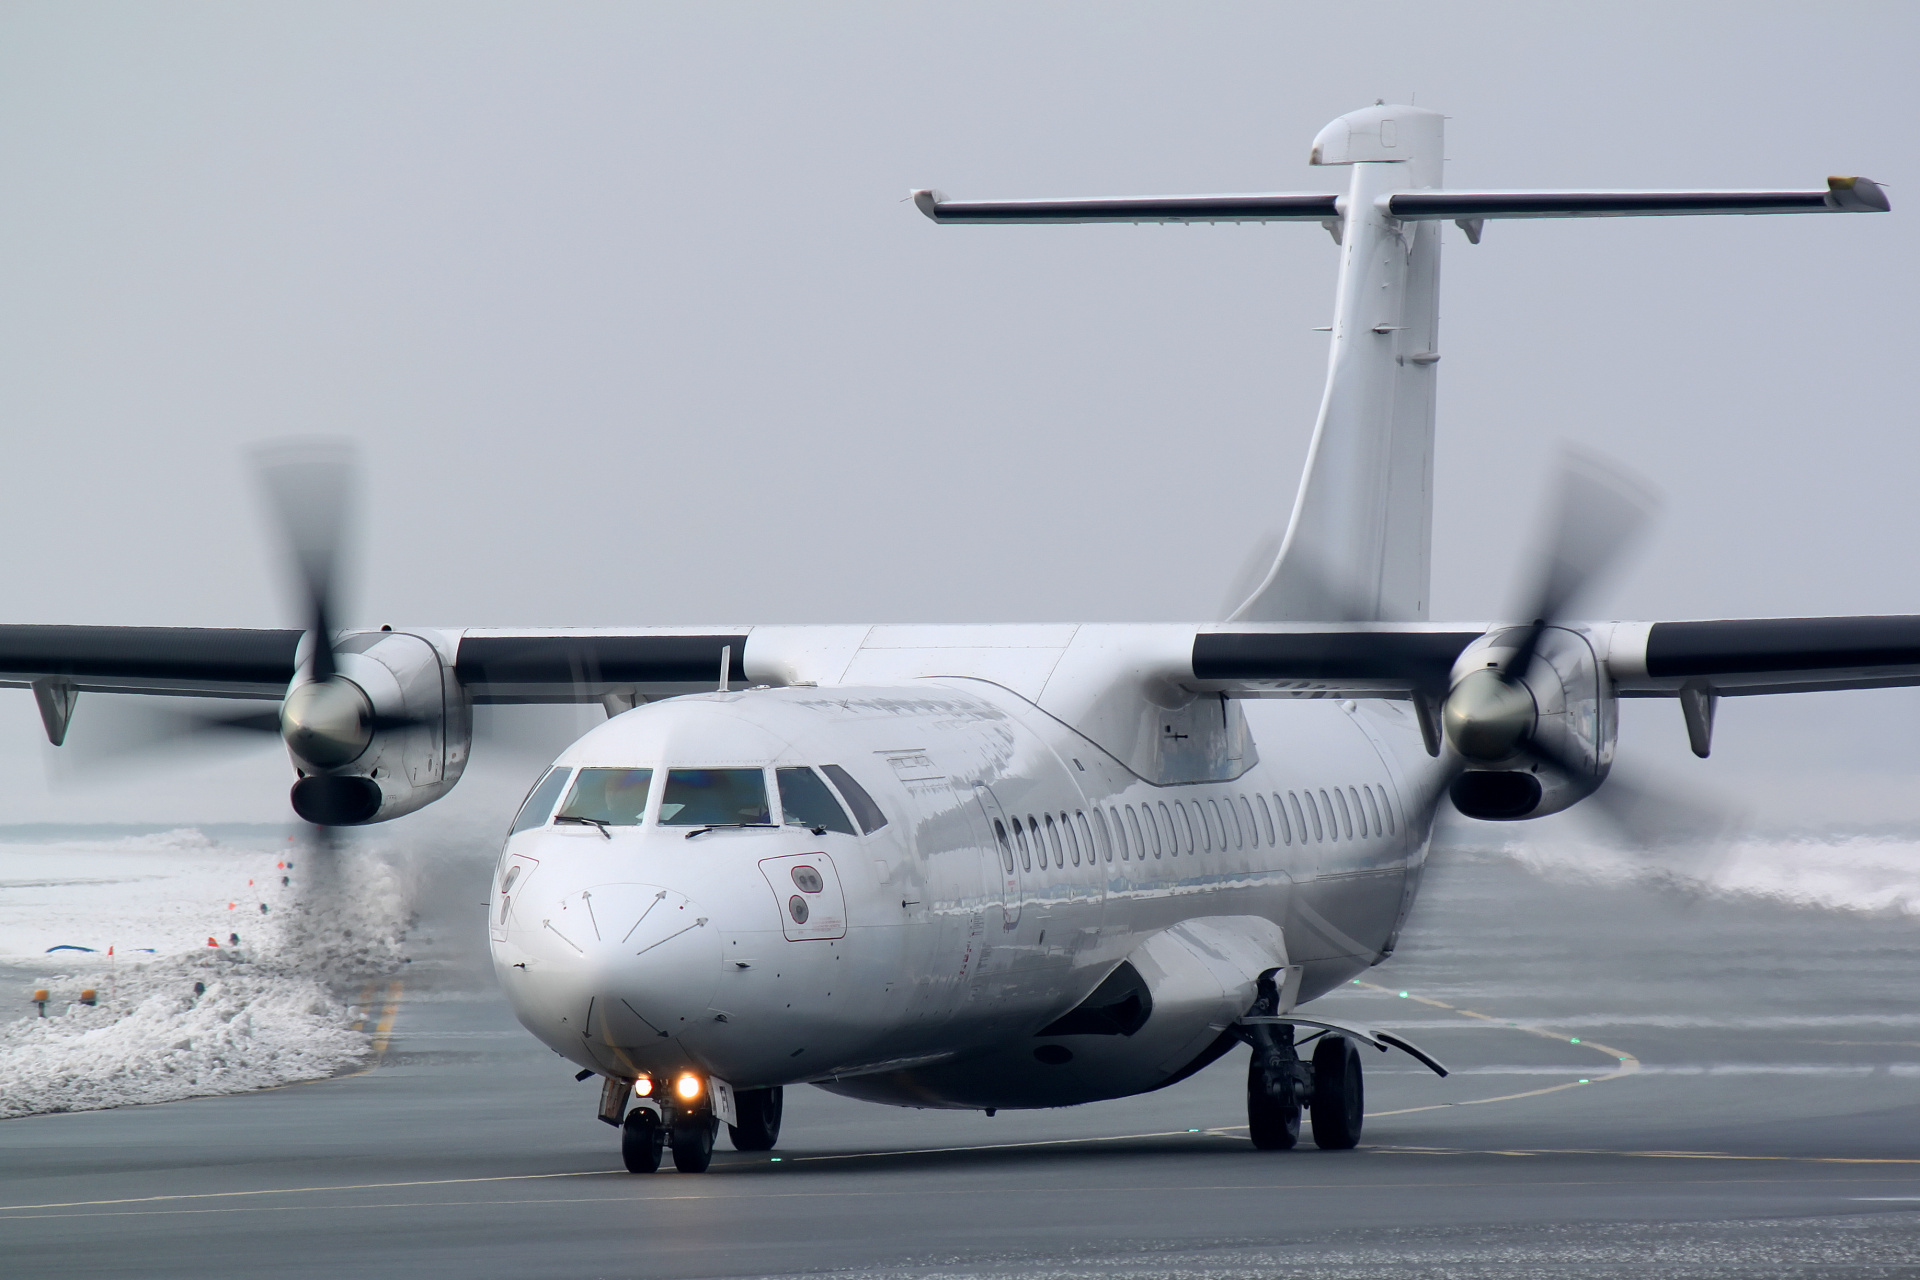 SP-EFI (Aircraft » EPWA Spotting » ATR 72 » EuroLOT)